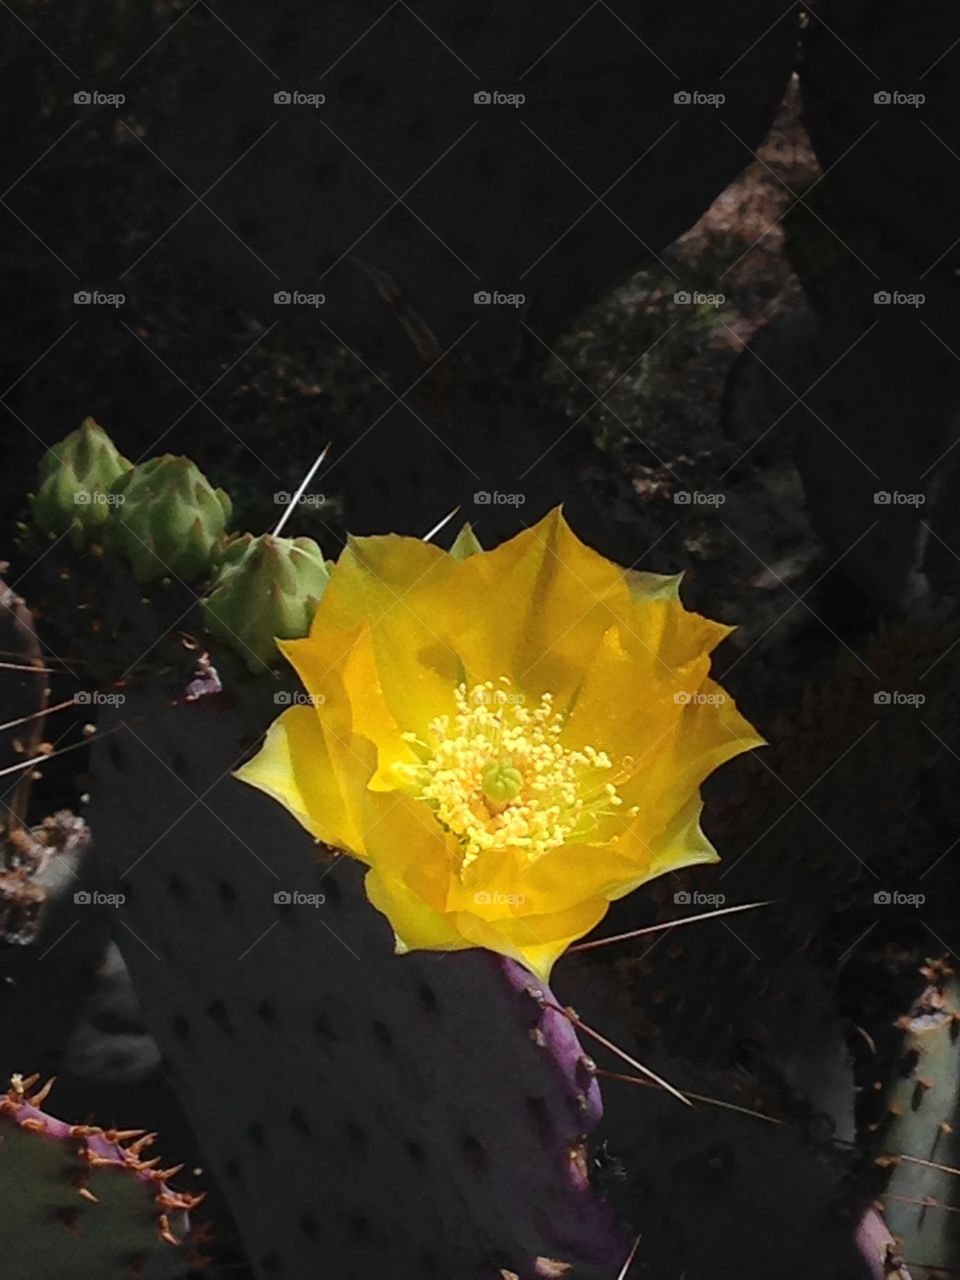 Desert blossom. Cactus flower